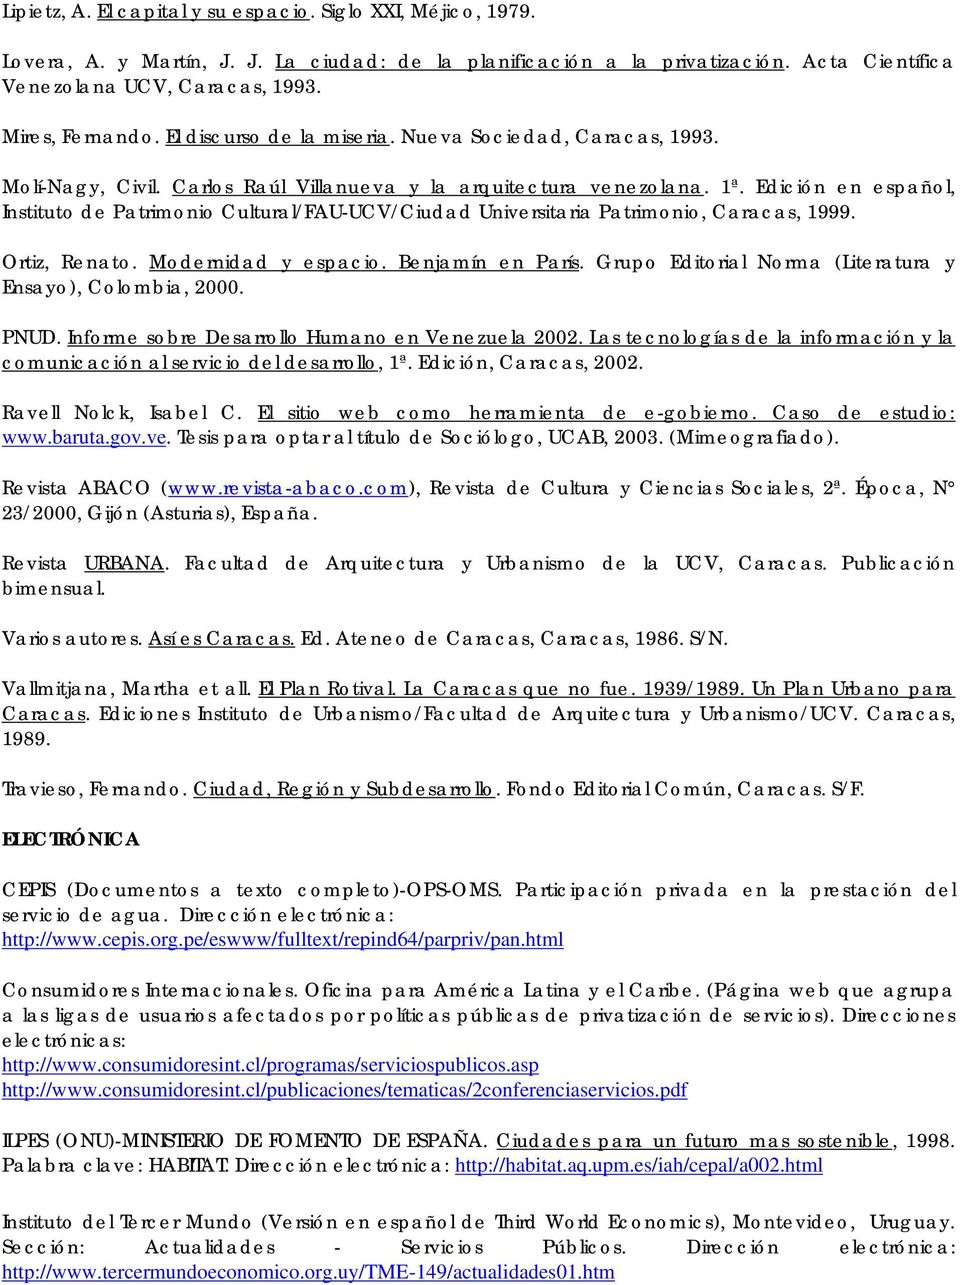 Edición en español, Instituto de Patrimonio Cultural/FAU-UCV/Ciudad Universitaria Patrimonio, Caracas, 1999. Ortiz, Renato. Modernidad y espacio. Benjamín en París.